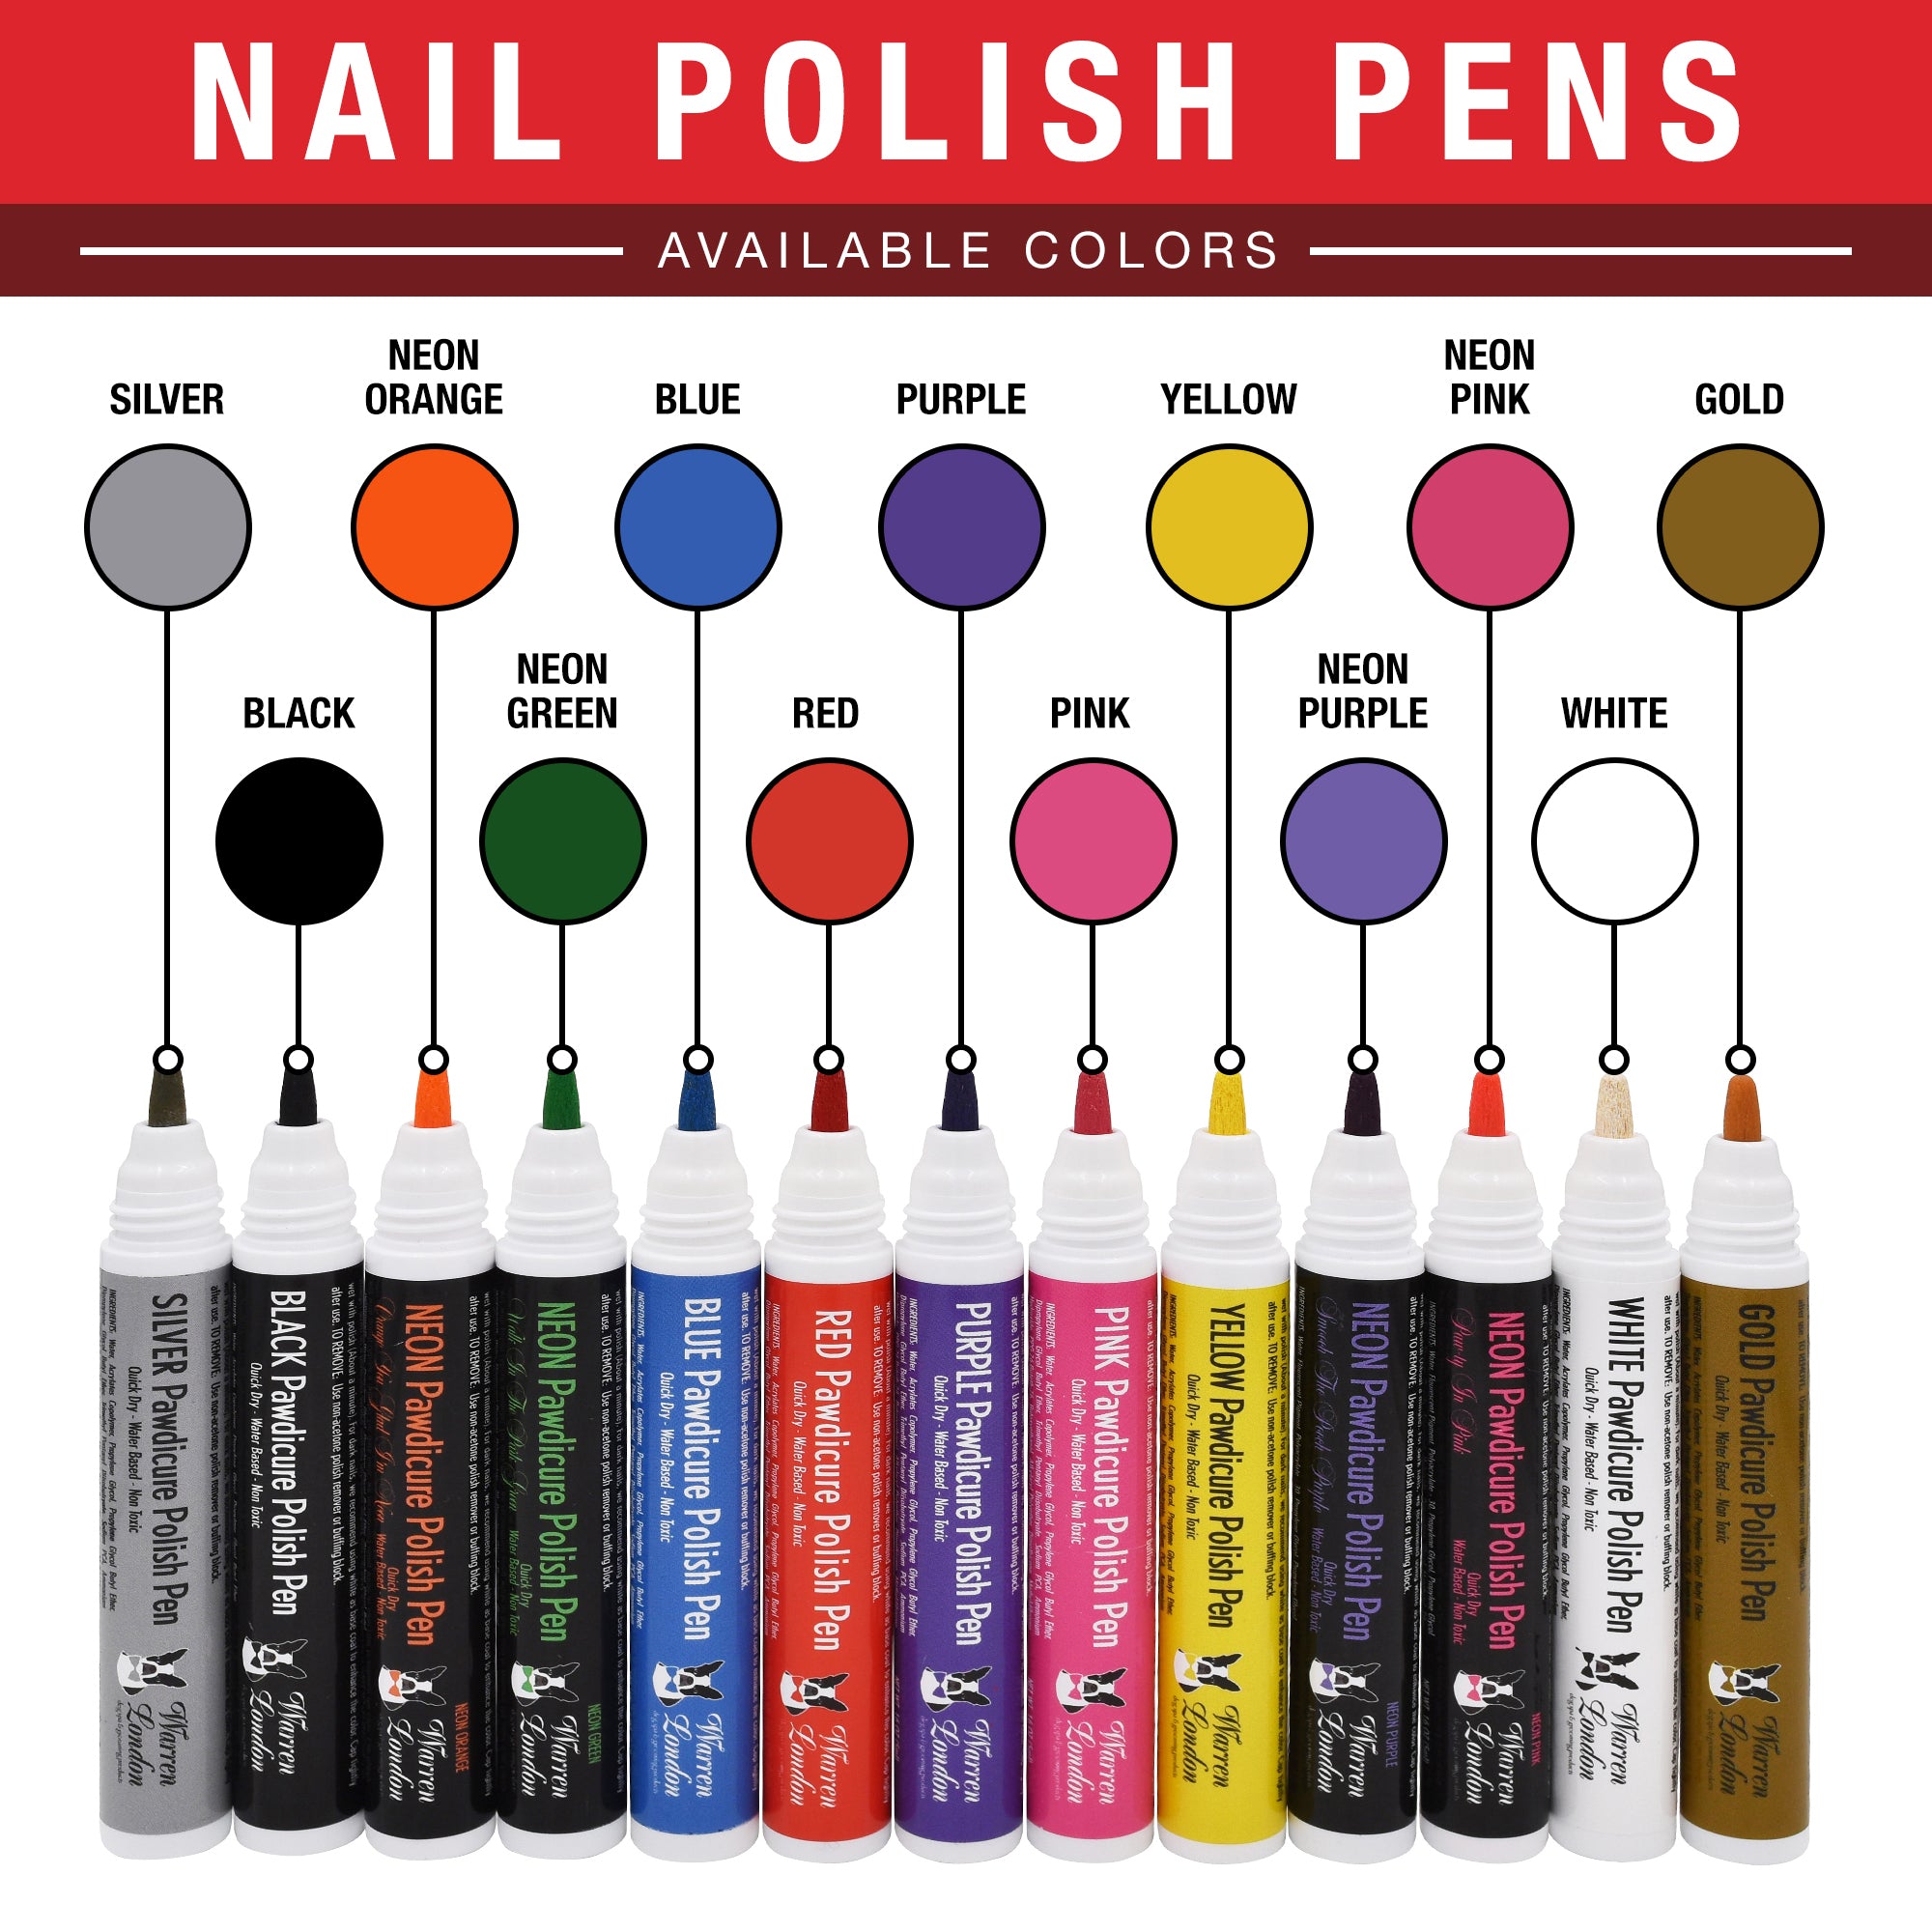 Pawdicure Polish Pens - 13 Pen Bundle Deals & Packages Warren London 